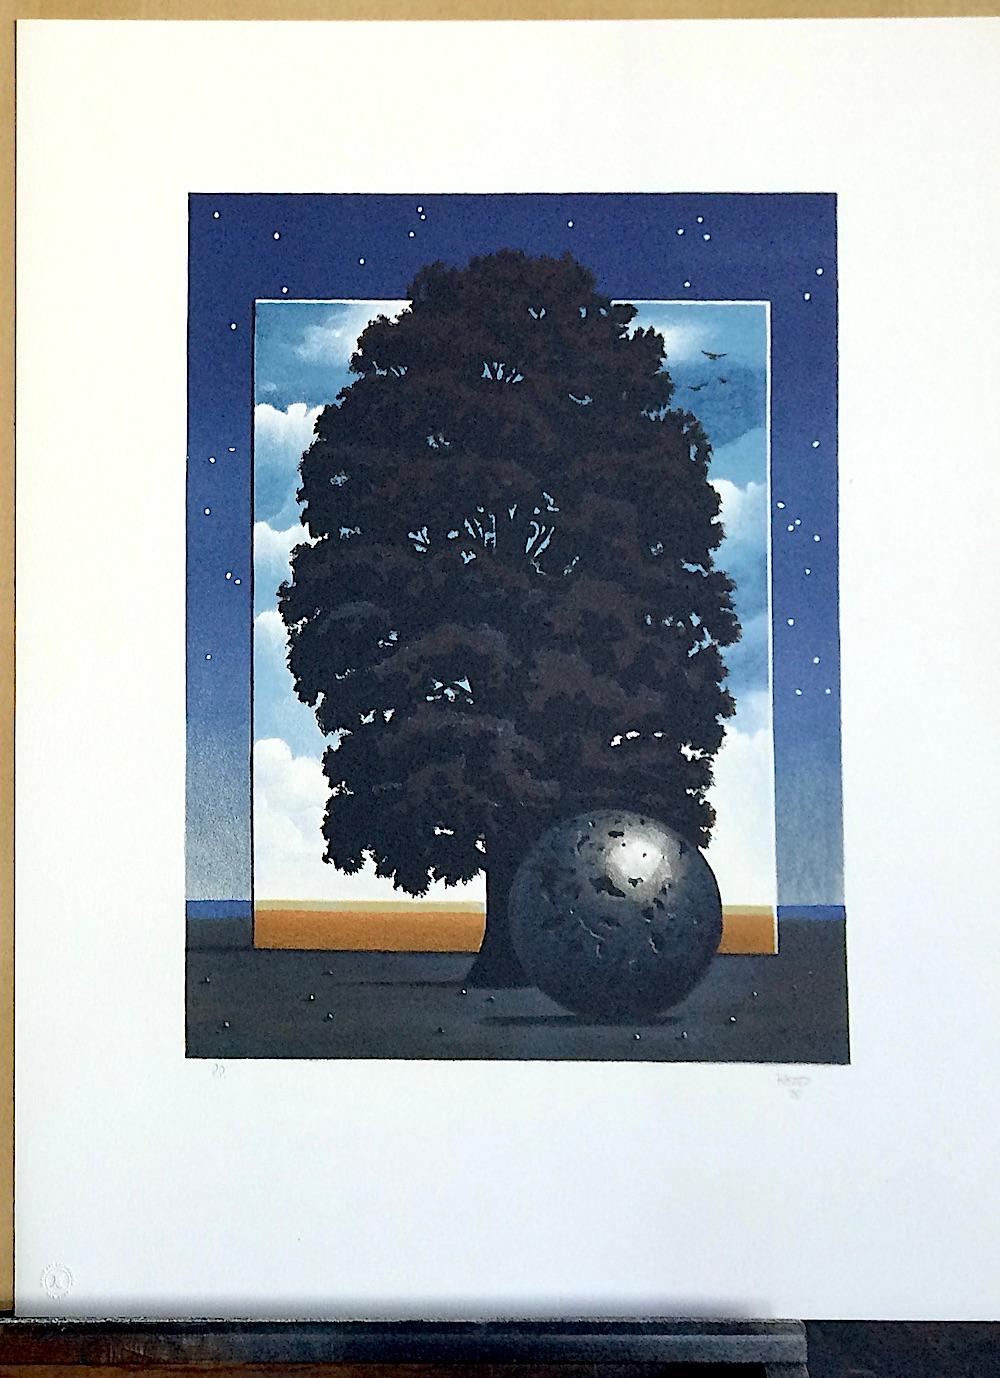 LIGHT OF DISCOVERY, lithographie dessinée à la main, paysage surréaliste, ciel nocturne, arbre  - Violet Landscape Print par Michael Hasted